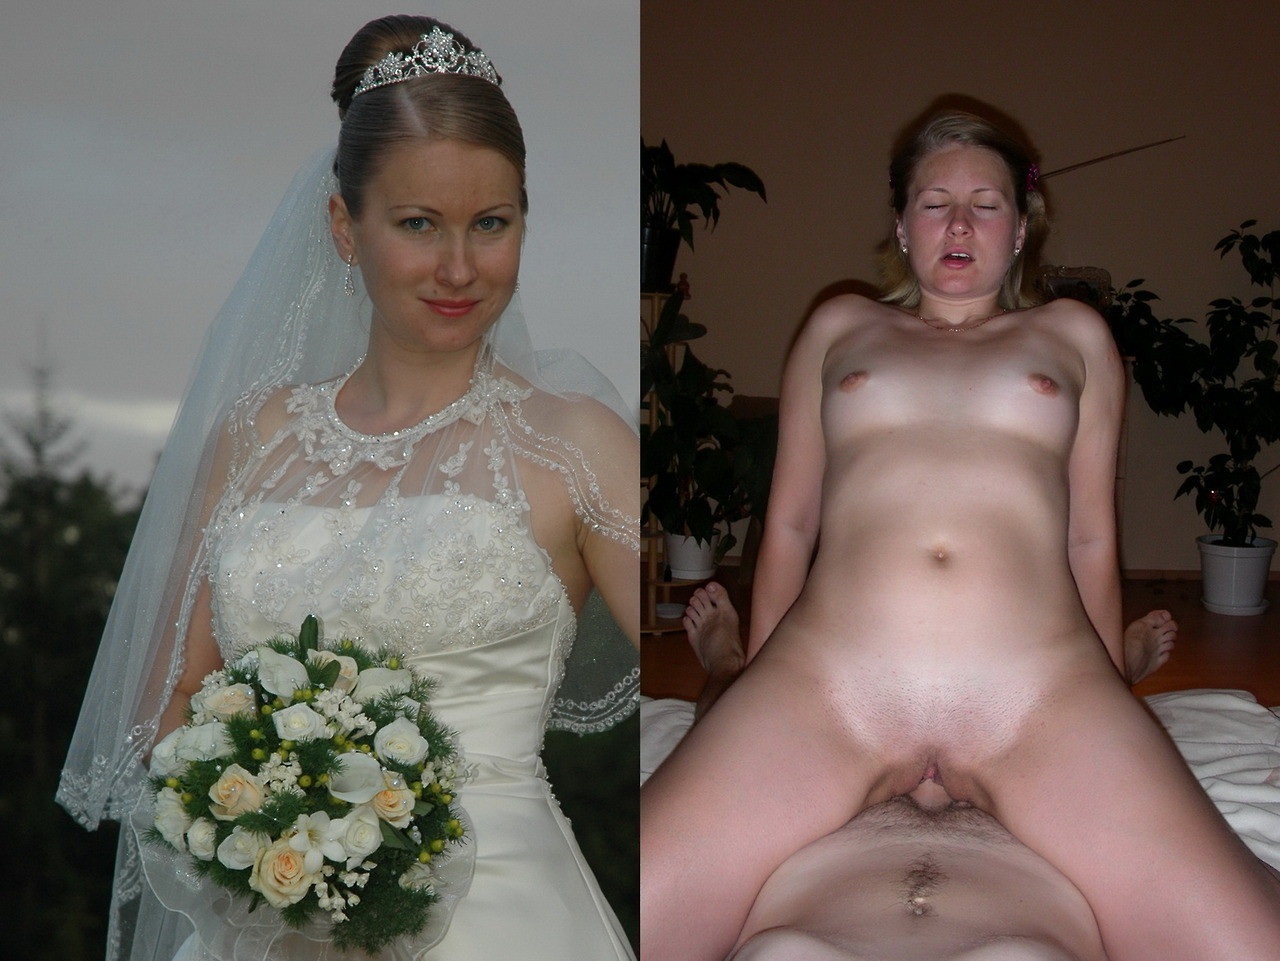 Голые девушки после свадьбы - фото порно devkis